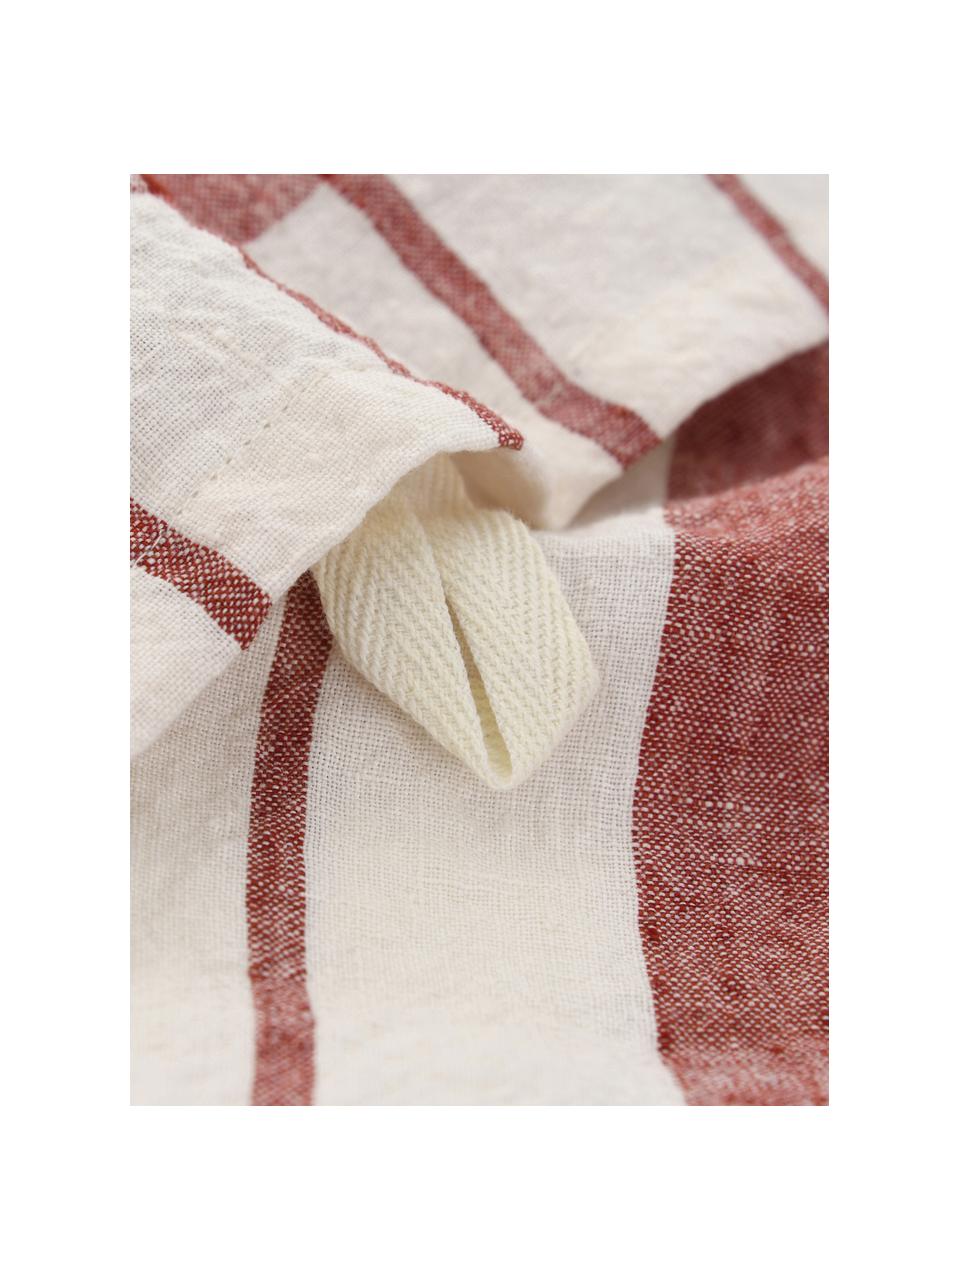 Ręcznik kuchenny z bawełny Helga, 100% bawełna, Czerwony, biały, S 50 x D 70 cm